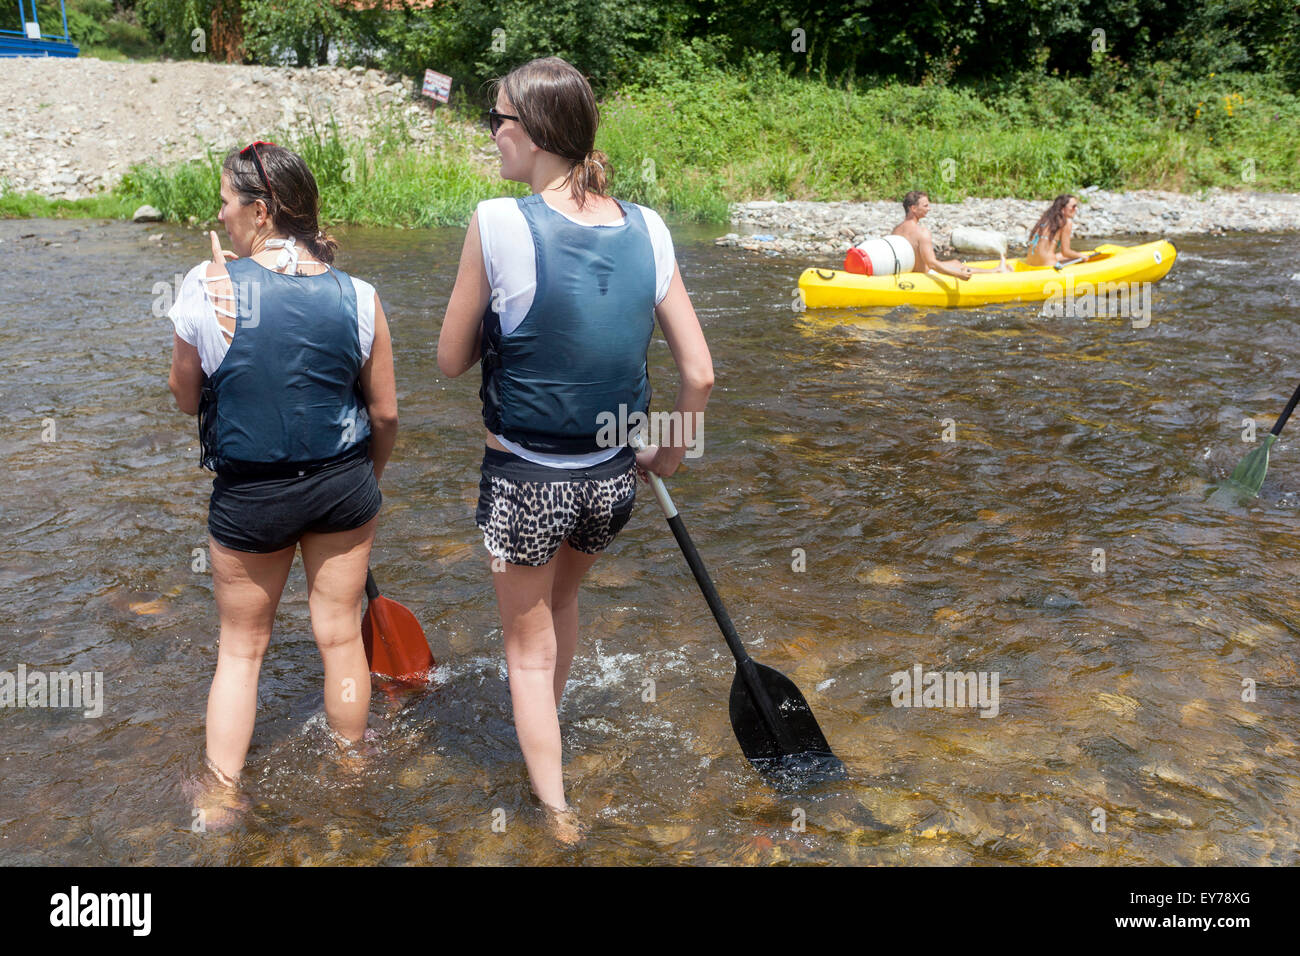 Persone che scendono dal fiume Moldava, canoa, due ragazze, Boemia del Sud, Repubblica Ceca, vacanze estive Foto Stock